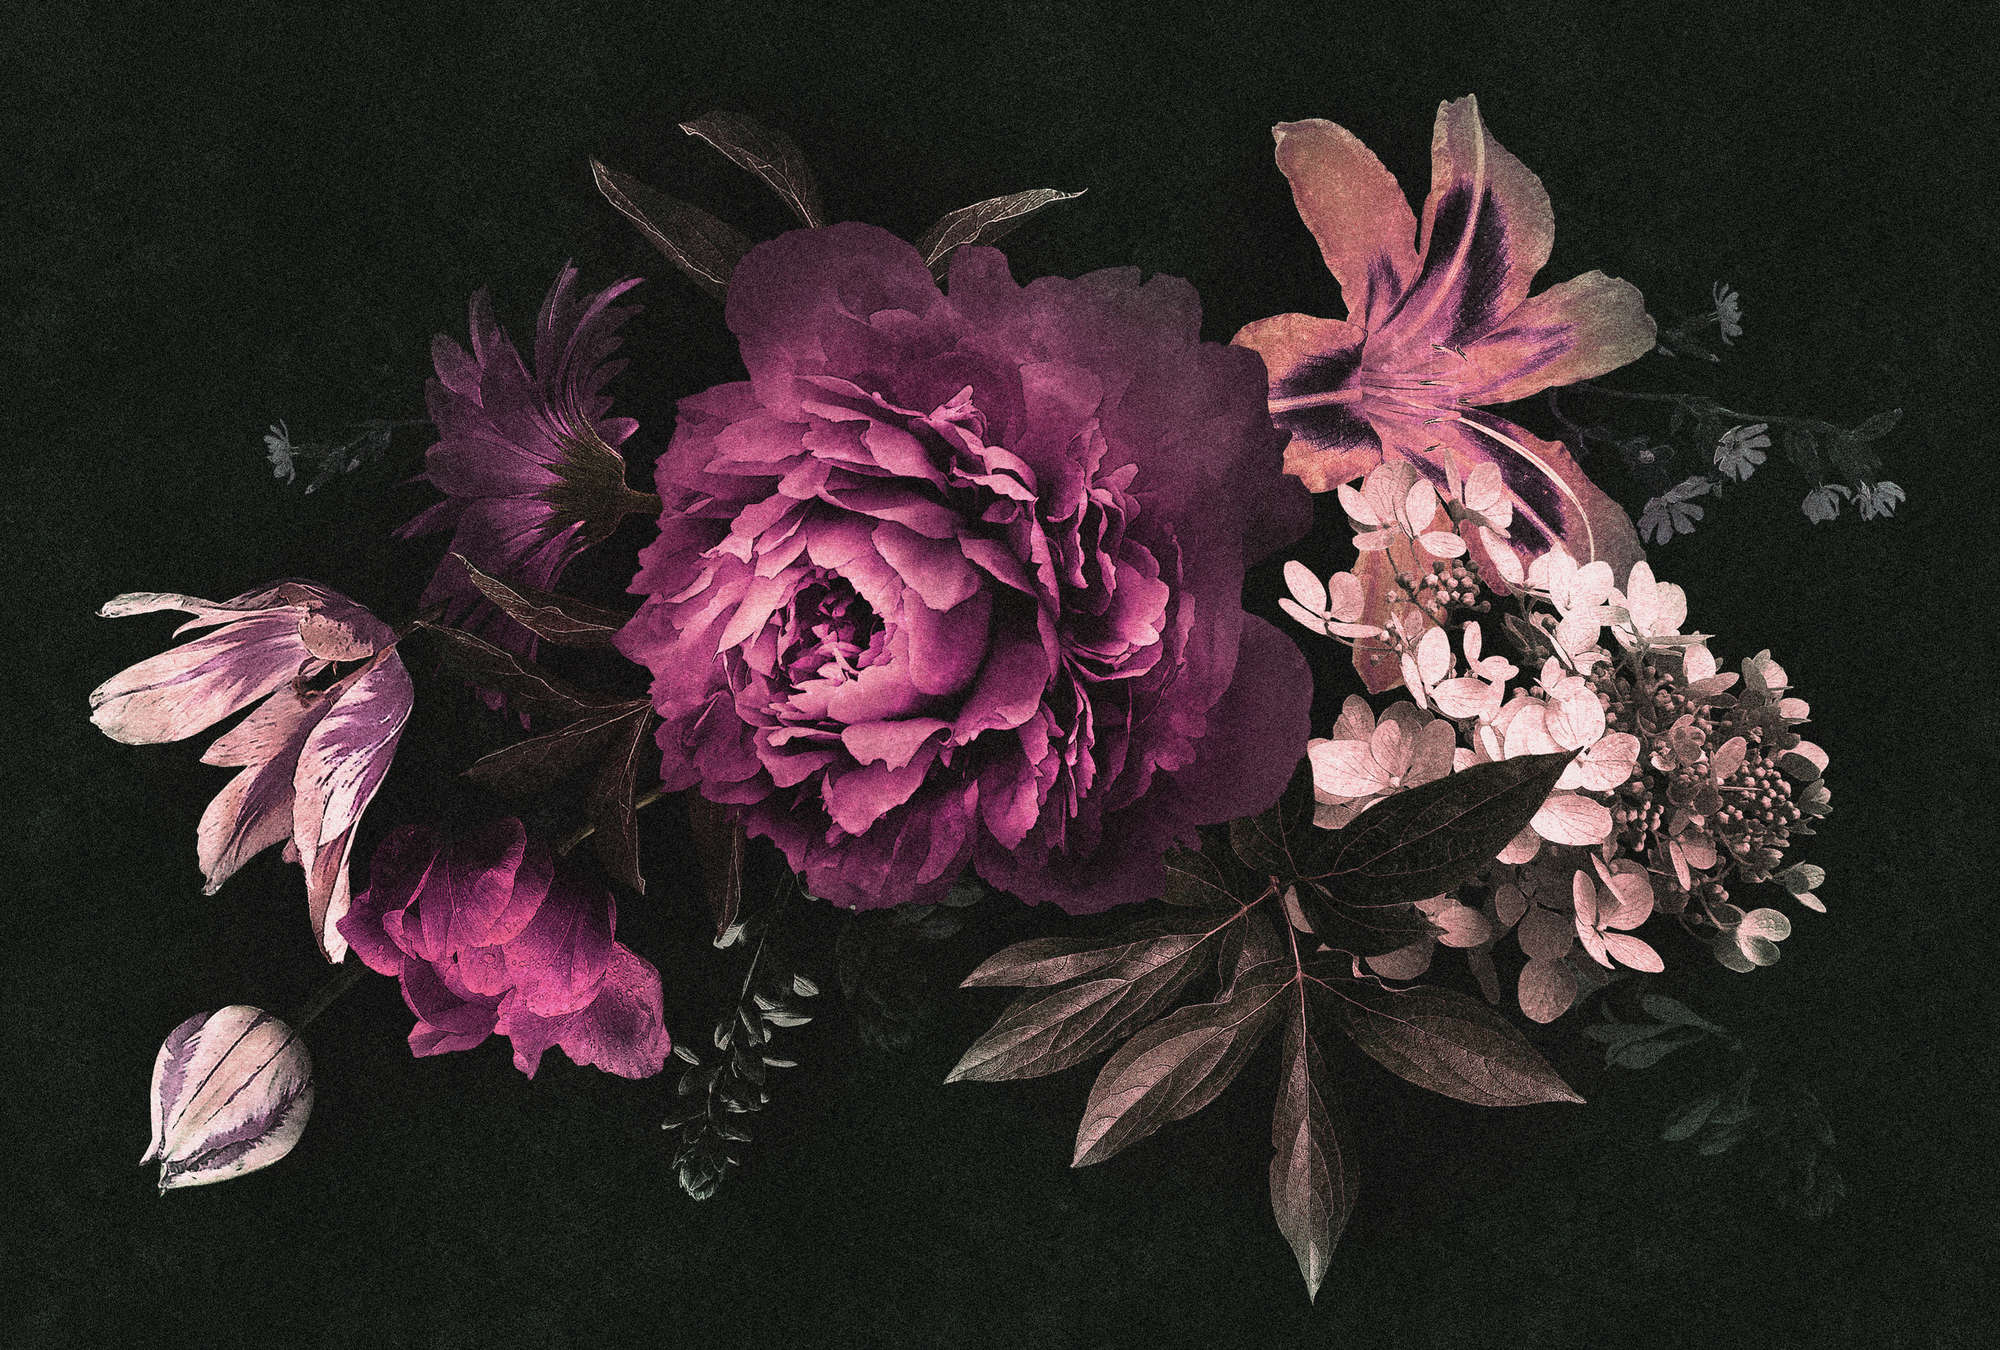             Drama queen 3 - Digital behang romantisch boeket bloemen- kartonnen structuur - Roze, Zwart | structuur niet-geweven
        